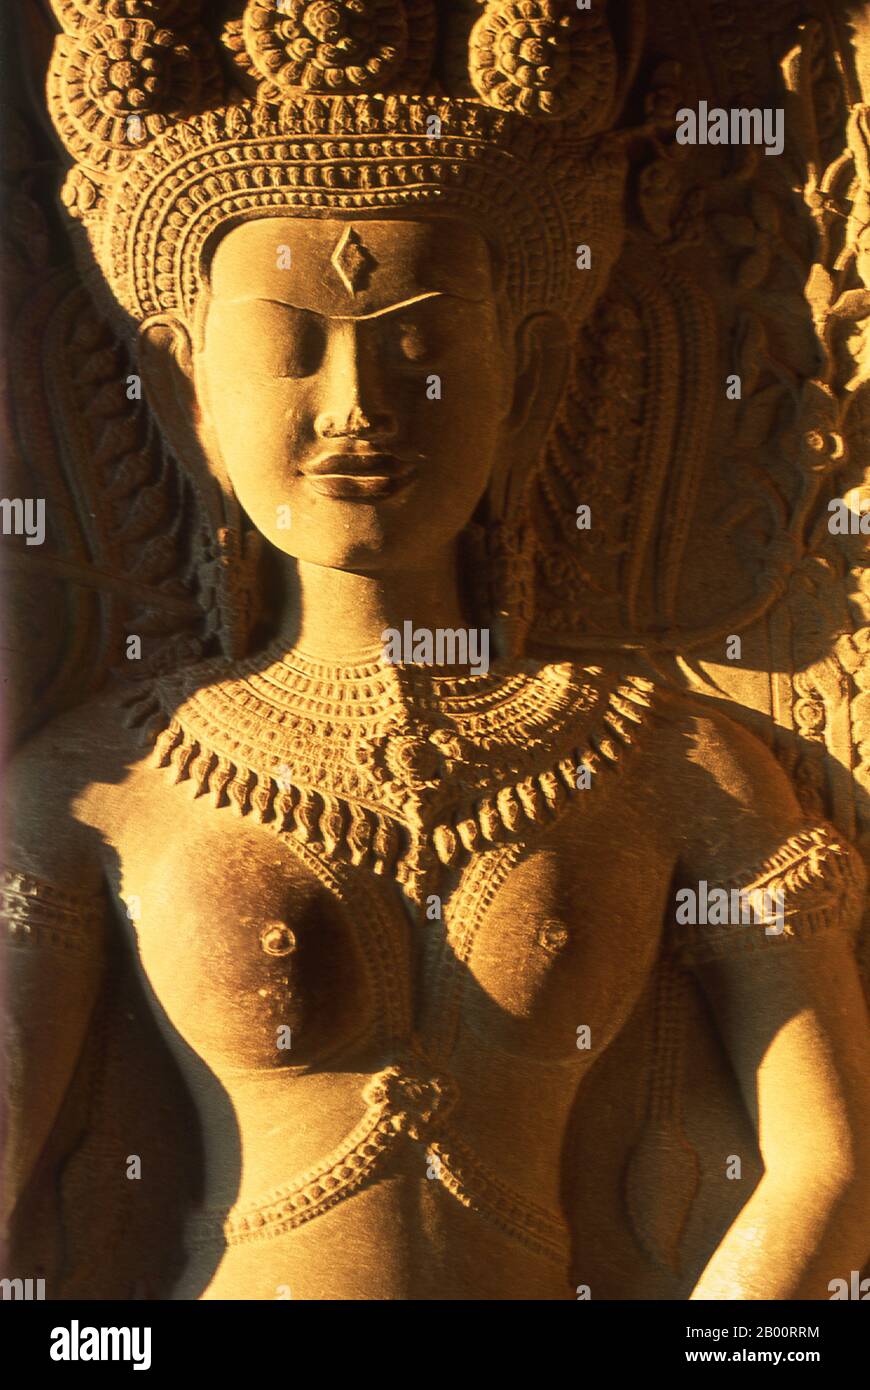 Cambogia: Apsaras (Nymph Celestiale) Adorn Angkor Wat. Angkor Wat fu costruito per il re Suryavarman II (governato dal 1113 al 50) all'inizio del XII secolo come tempio di stato e capitale. Come il tempio meglio conservato del sito di Angkor, è l'unico ad essere rimasto un centro religioso significativo sin dalla sua fondazione - prima indù, dedicato al dio Vishnu, poi buddista. E' il più grande edificio religioso del mondo. Il tempio è in cima allo stile classico dell'architettura Khmer. È diventato un simbolo della Cambogia, che appare sulla sua bandiera nazionale. Foto Stock